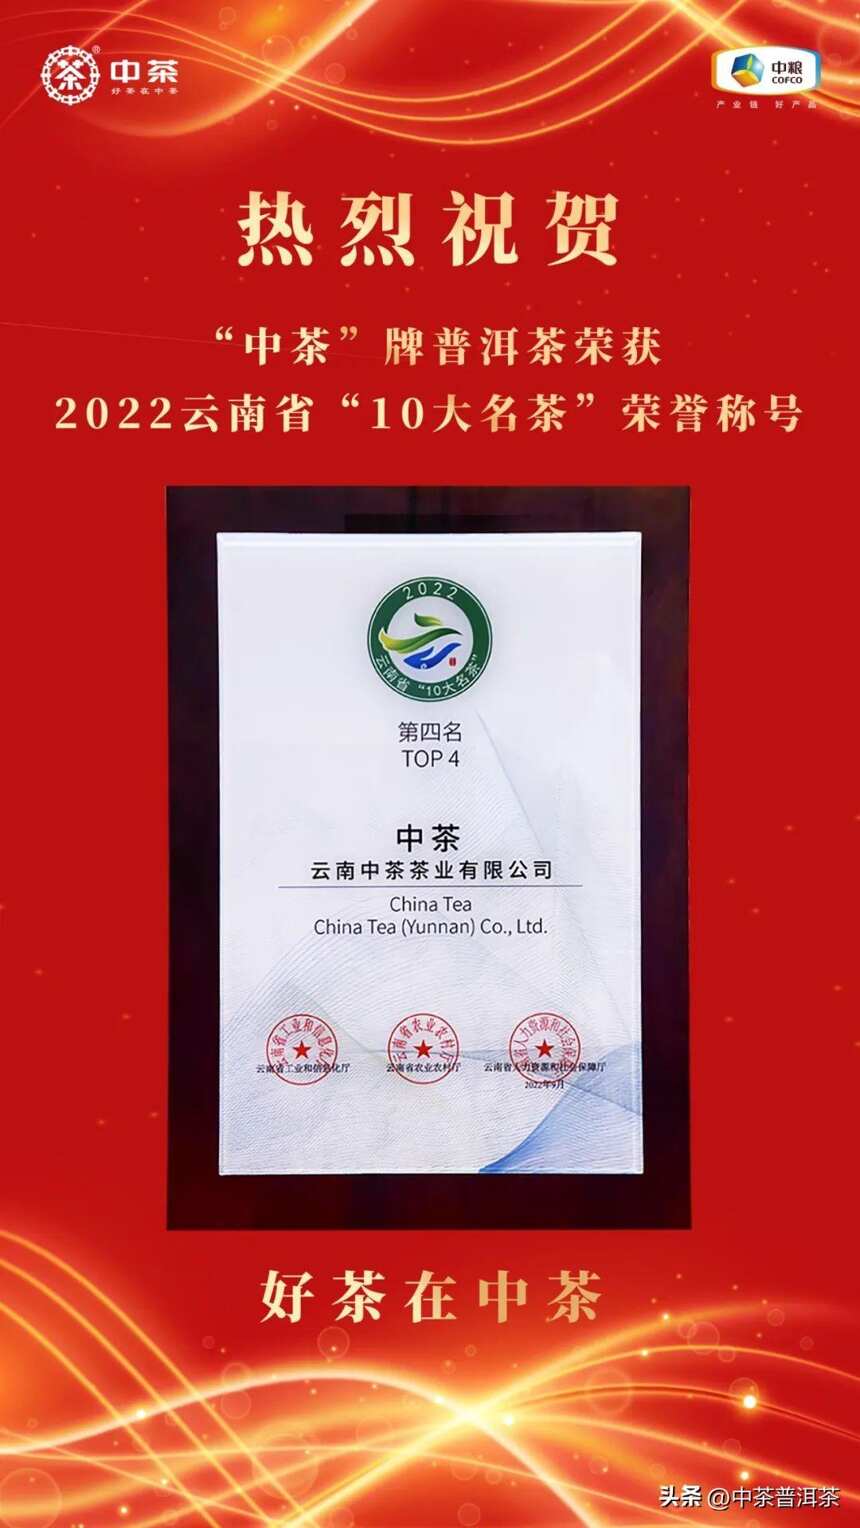 喜报丨“中茶”牌普洱茶荣获2022年云南省“10大名茶”荣誉称号